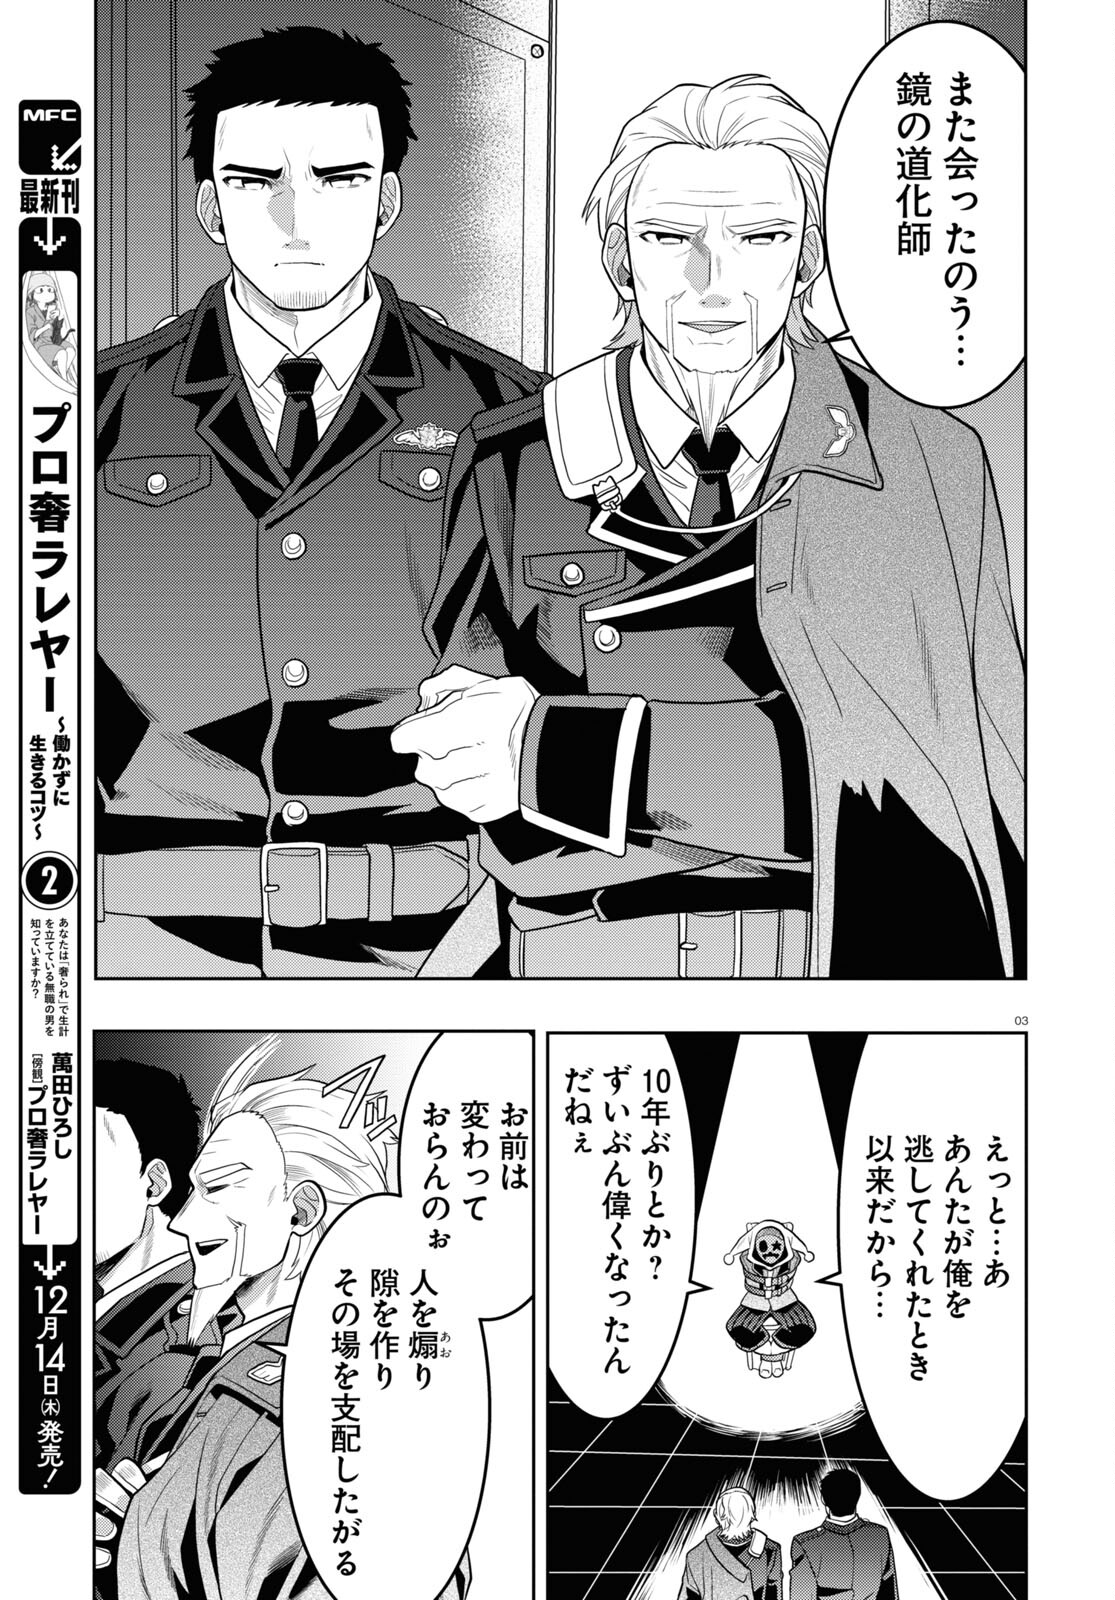 Nichijou Lock - Chapter 28 - Page 3